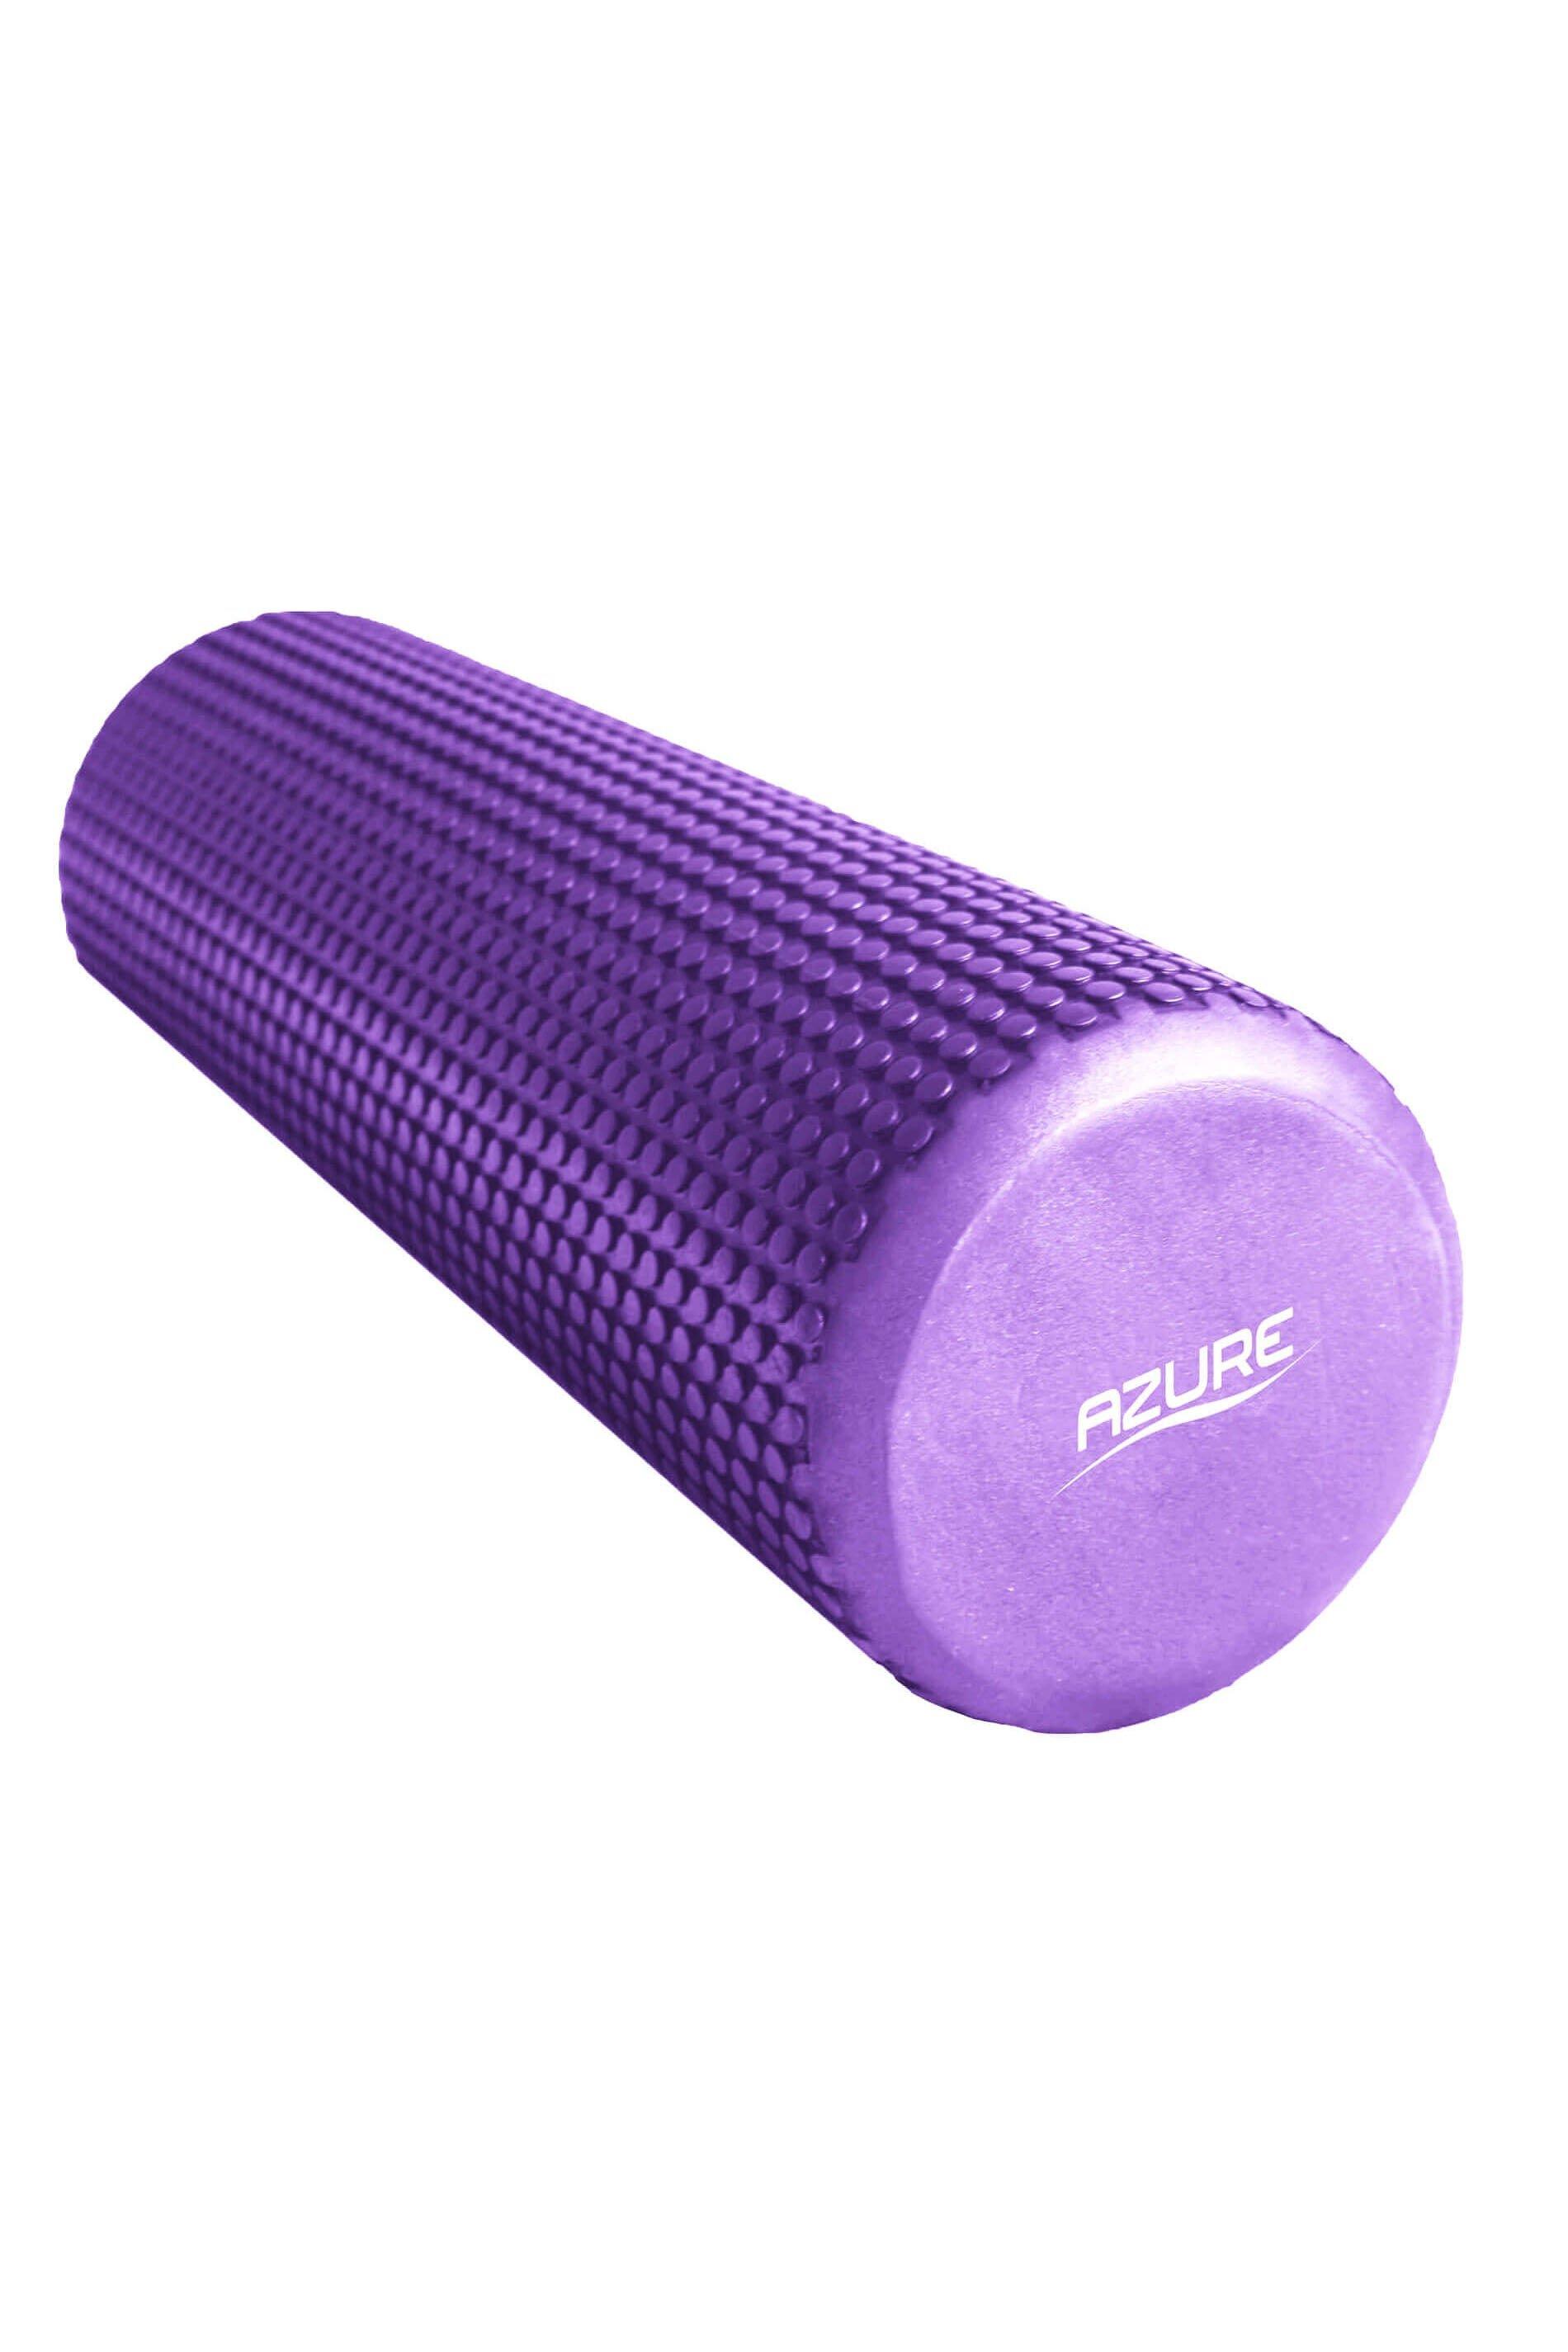 Azure Muscle Massage Foam Roller|purple